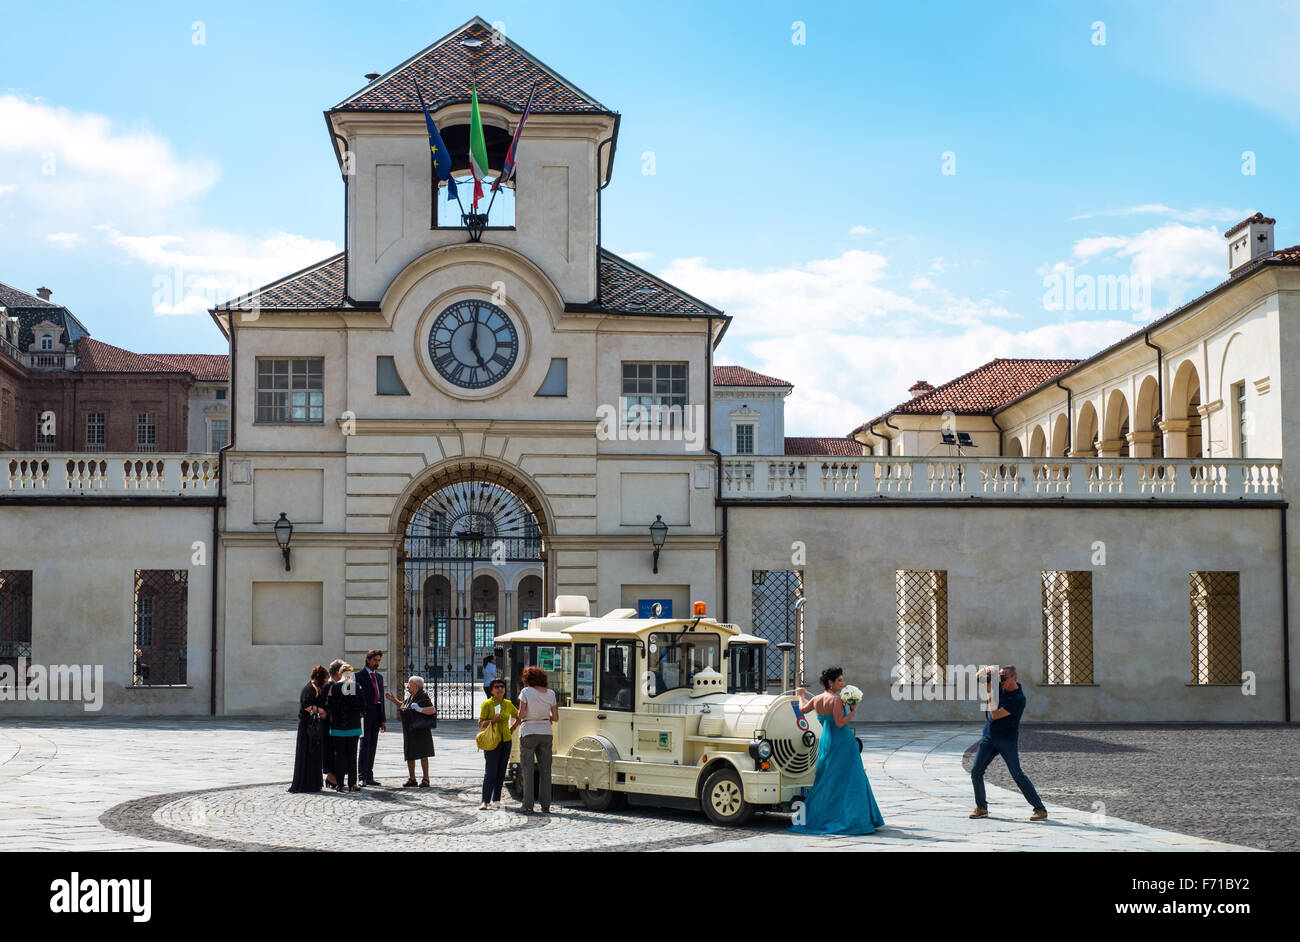 Italien, Venaria, Königspalast, Fotos von einer Hochzeit vor dem Haupteingang unter dem Uhrenturm Stockfoto